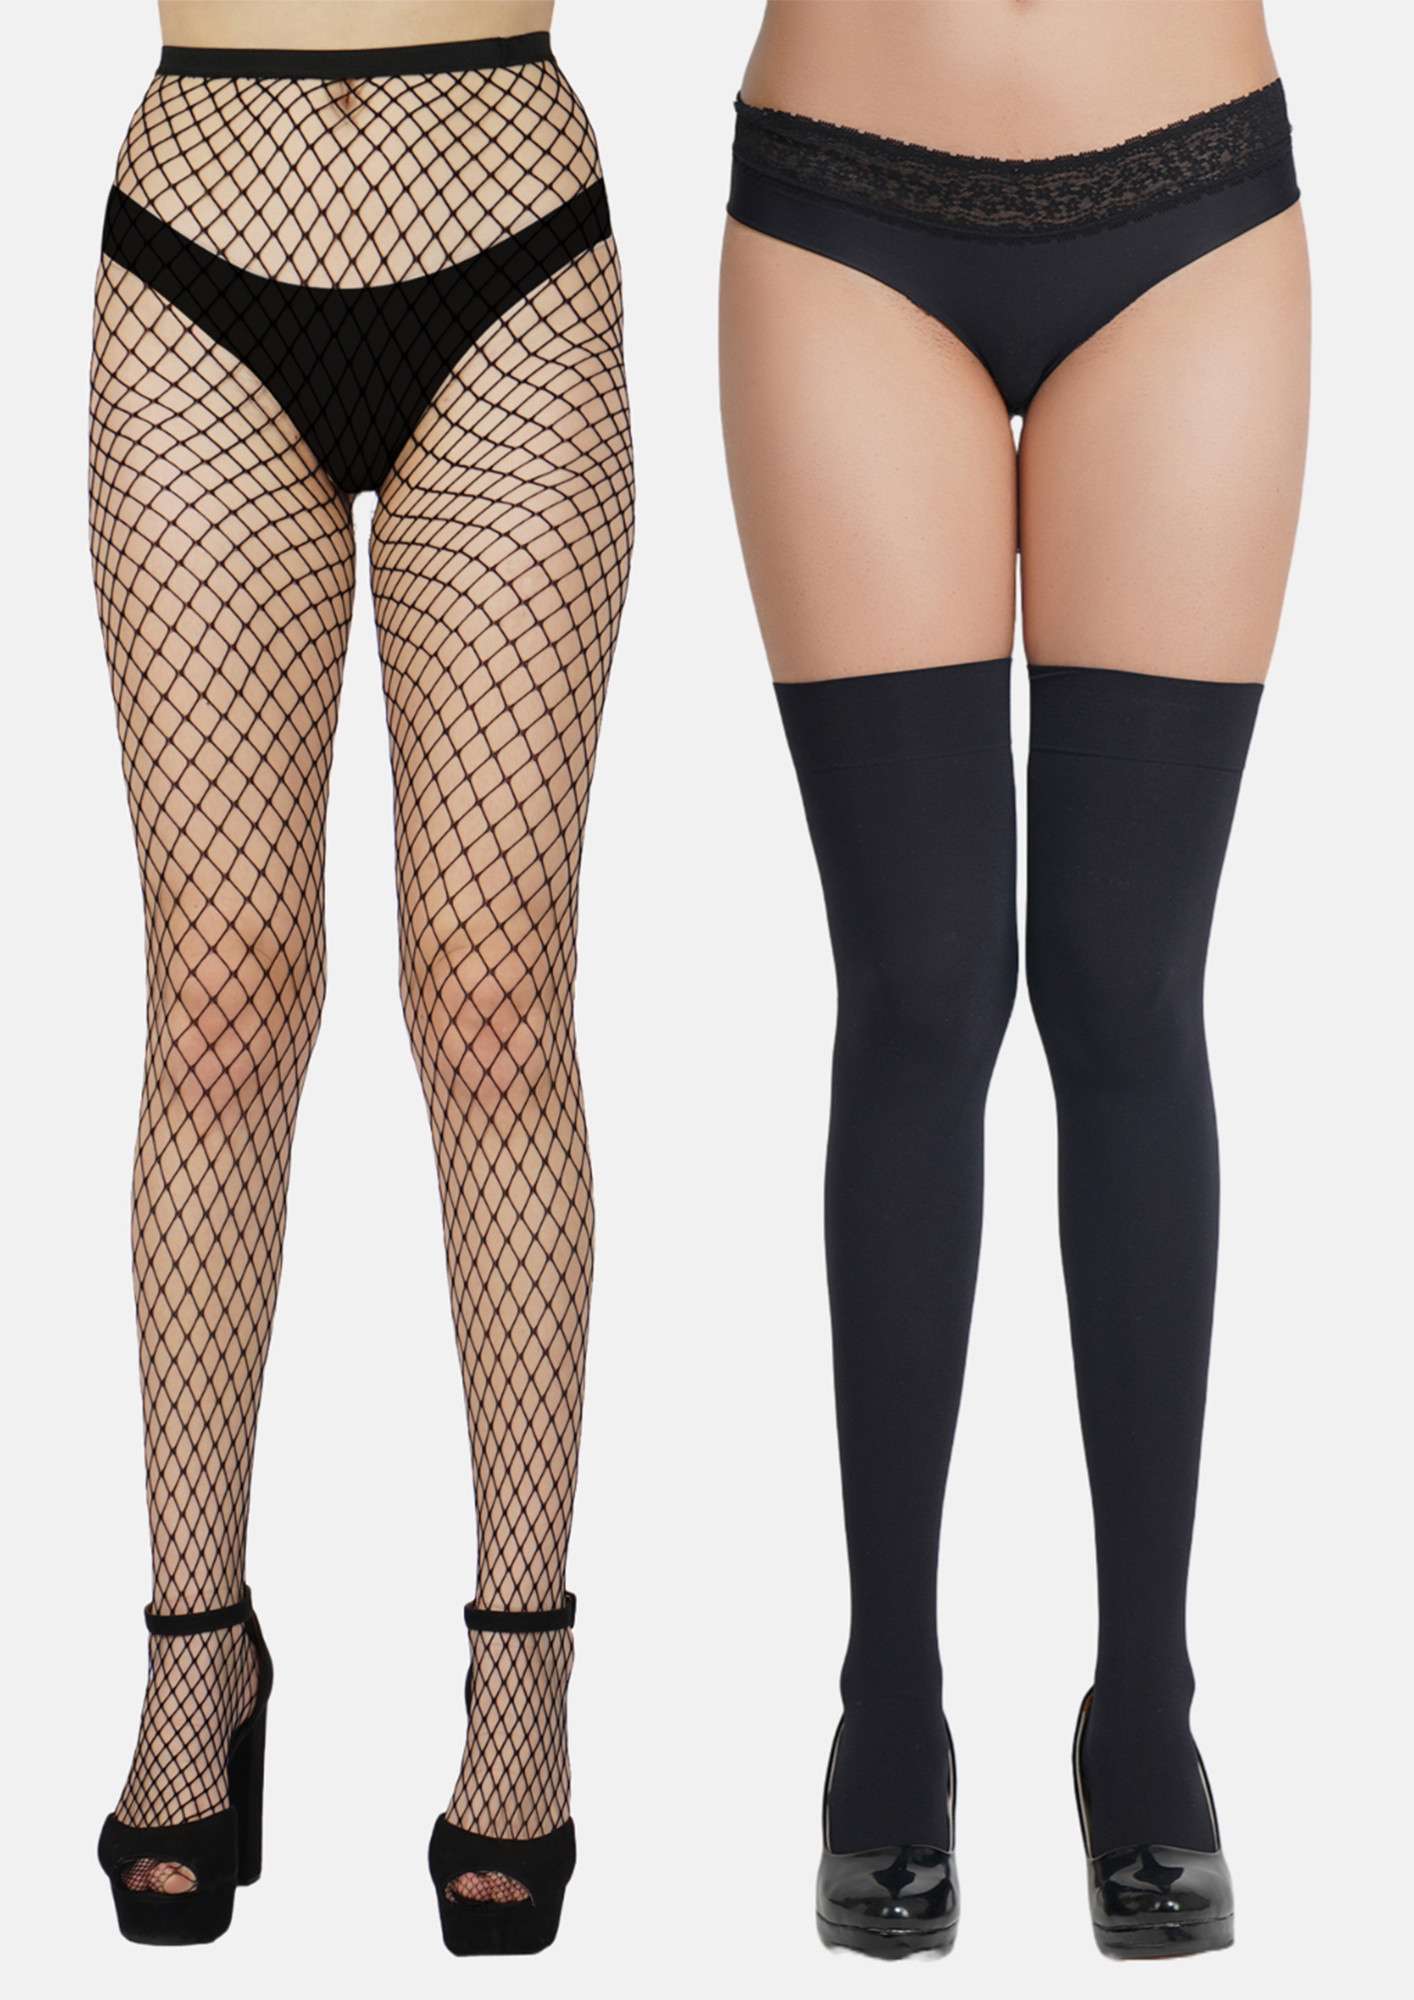 Buy N2S NEXT2SKIN Women's Fishnet Pattern Mesh Pantyhose Stockings